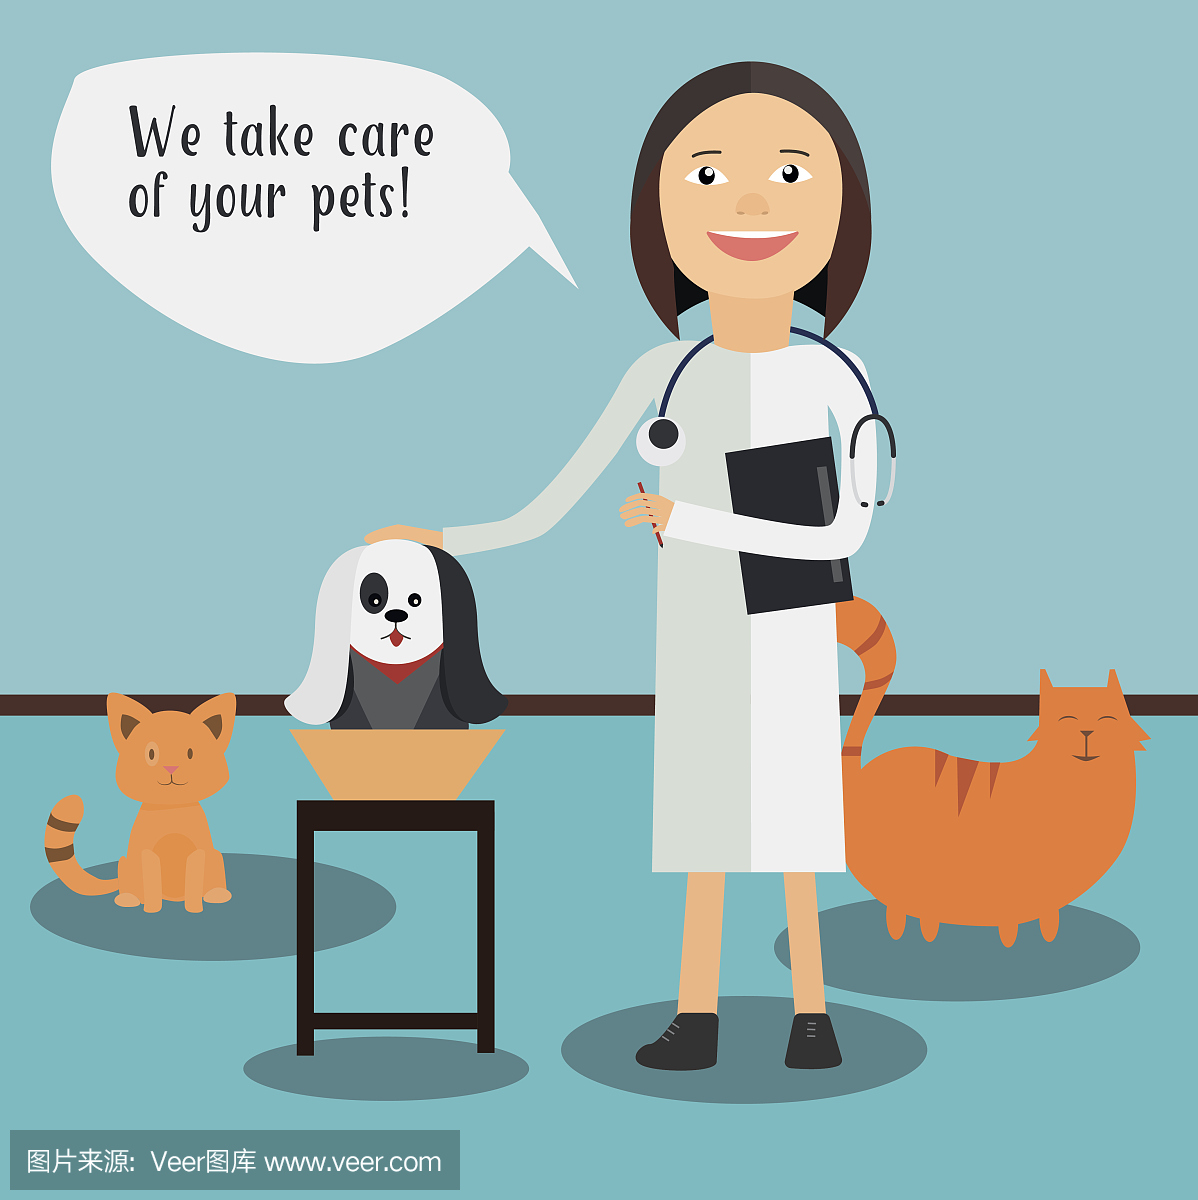 兽医的概念是用医生对狗进行体检。